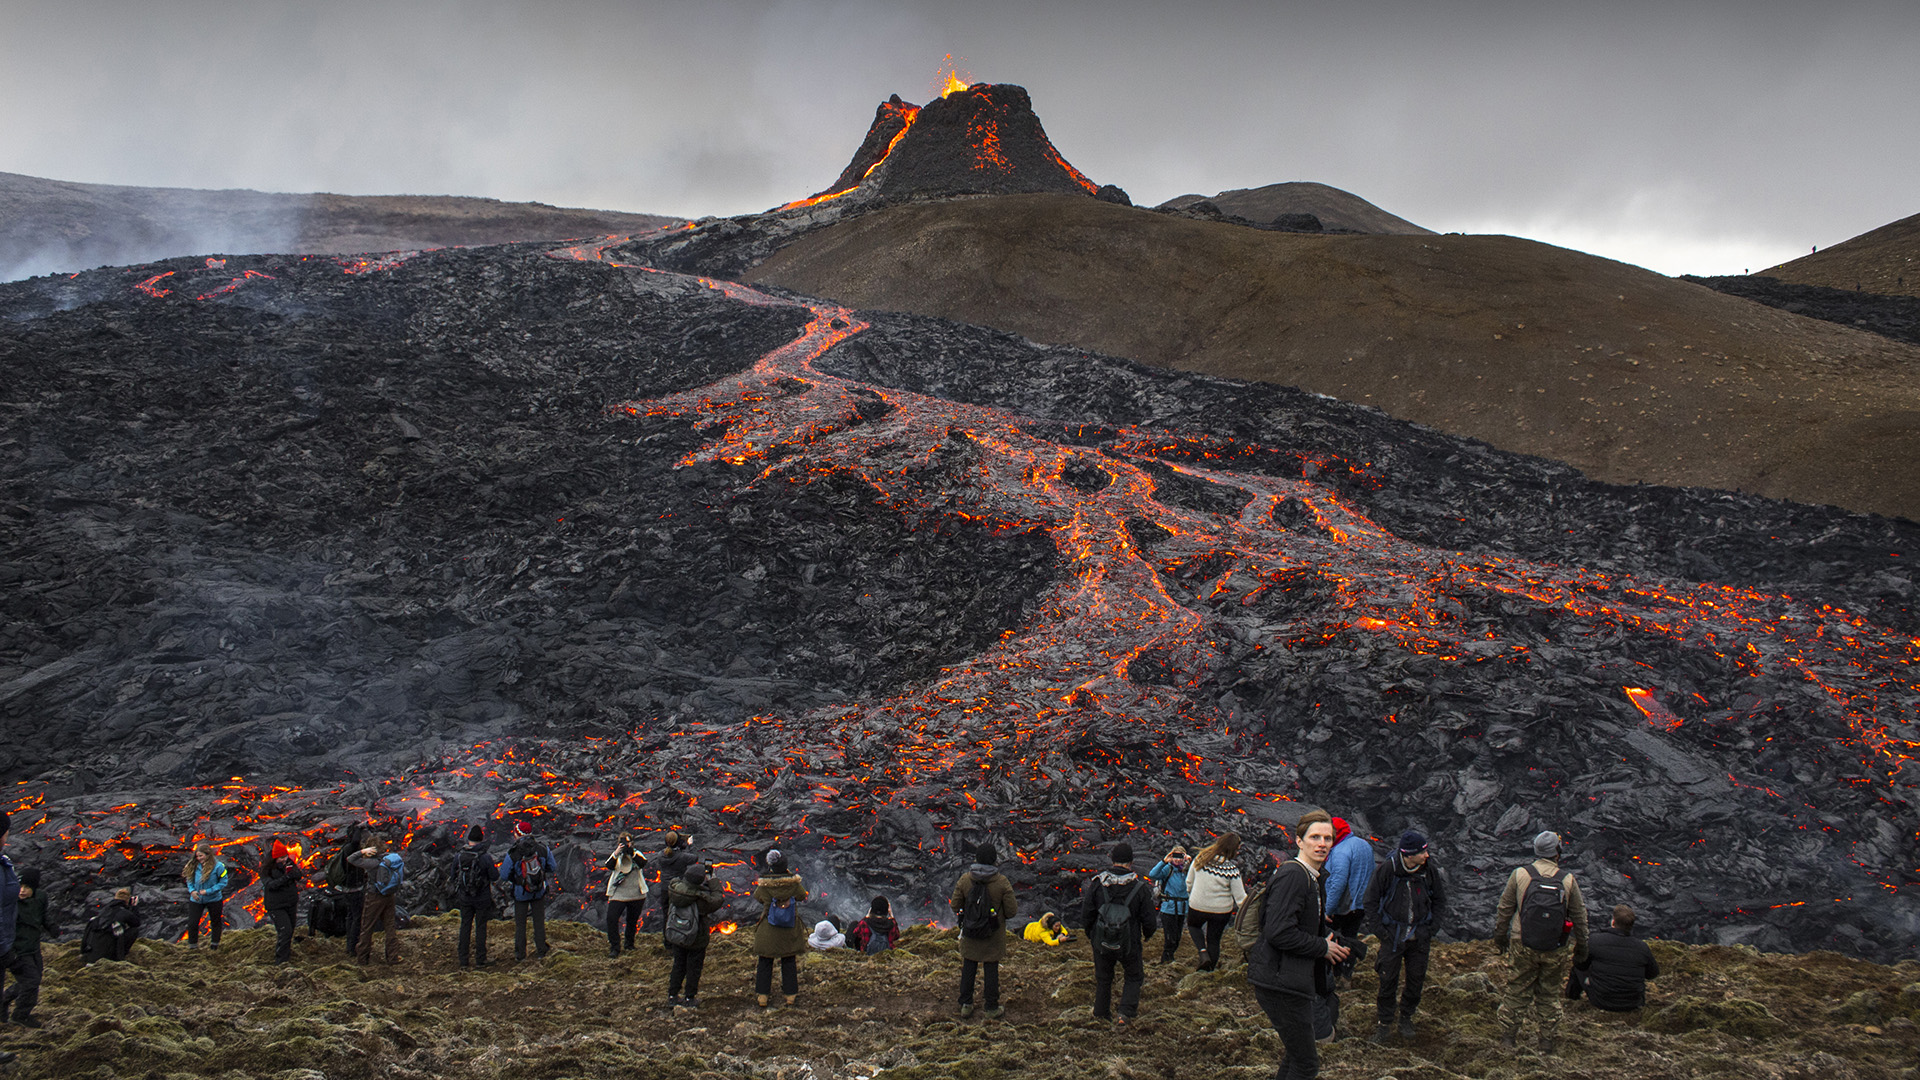 Islandia es un país insular nórdico que se caracteriza por su espectacular paisaje con volcanes, géiseres, termas y campos de lava (Foto: AP Photo/Marco Di Marco)